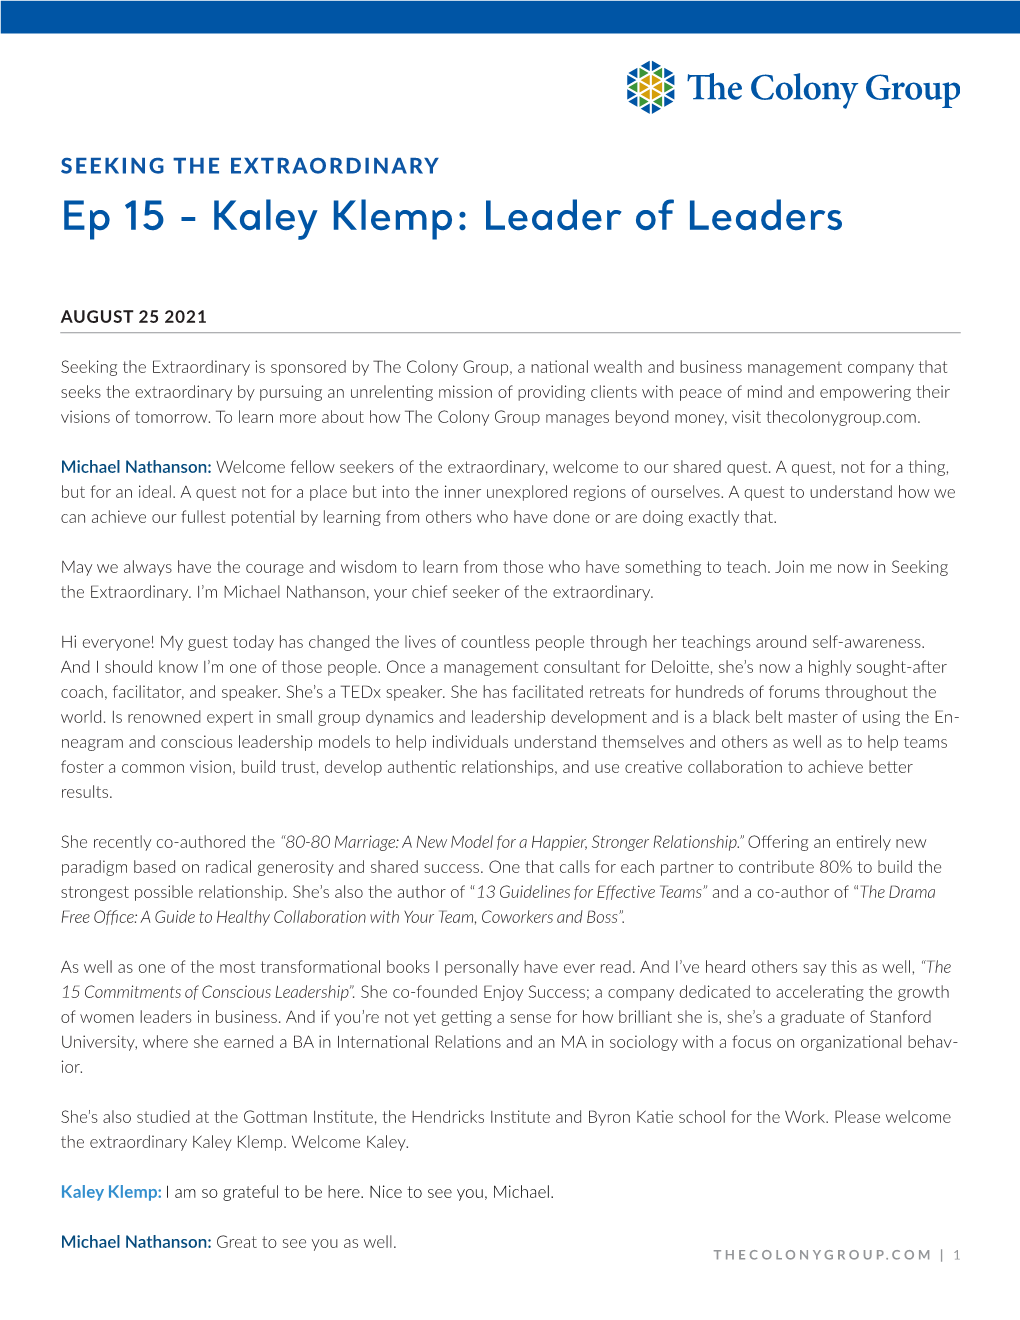 Kaley Klemp: Leader of Leaders